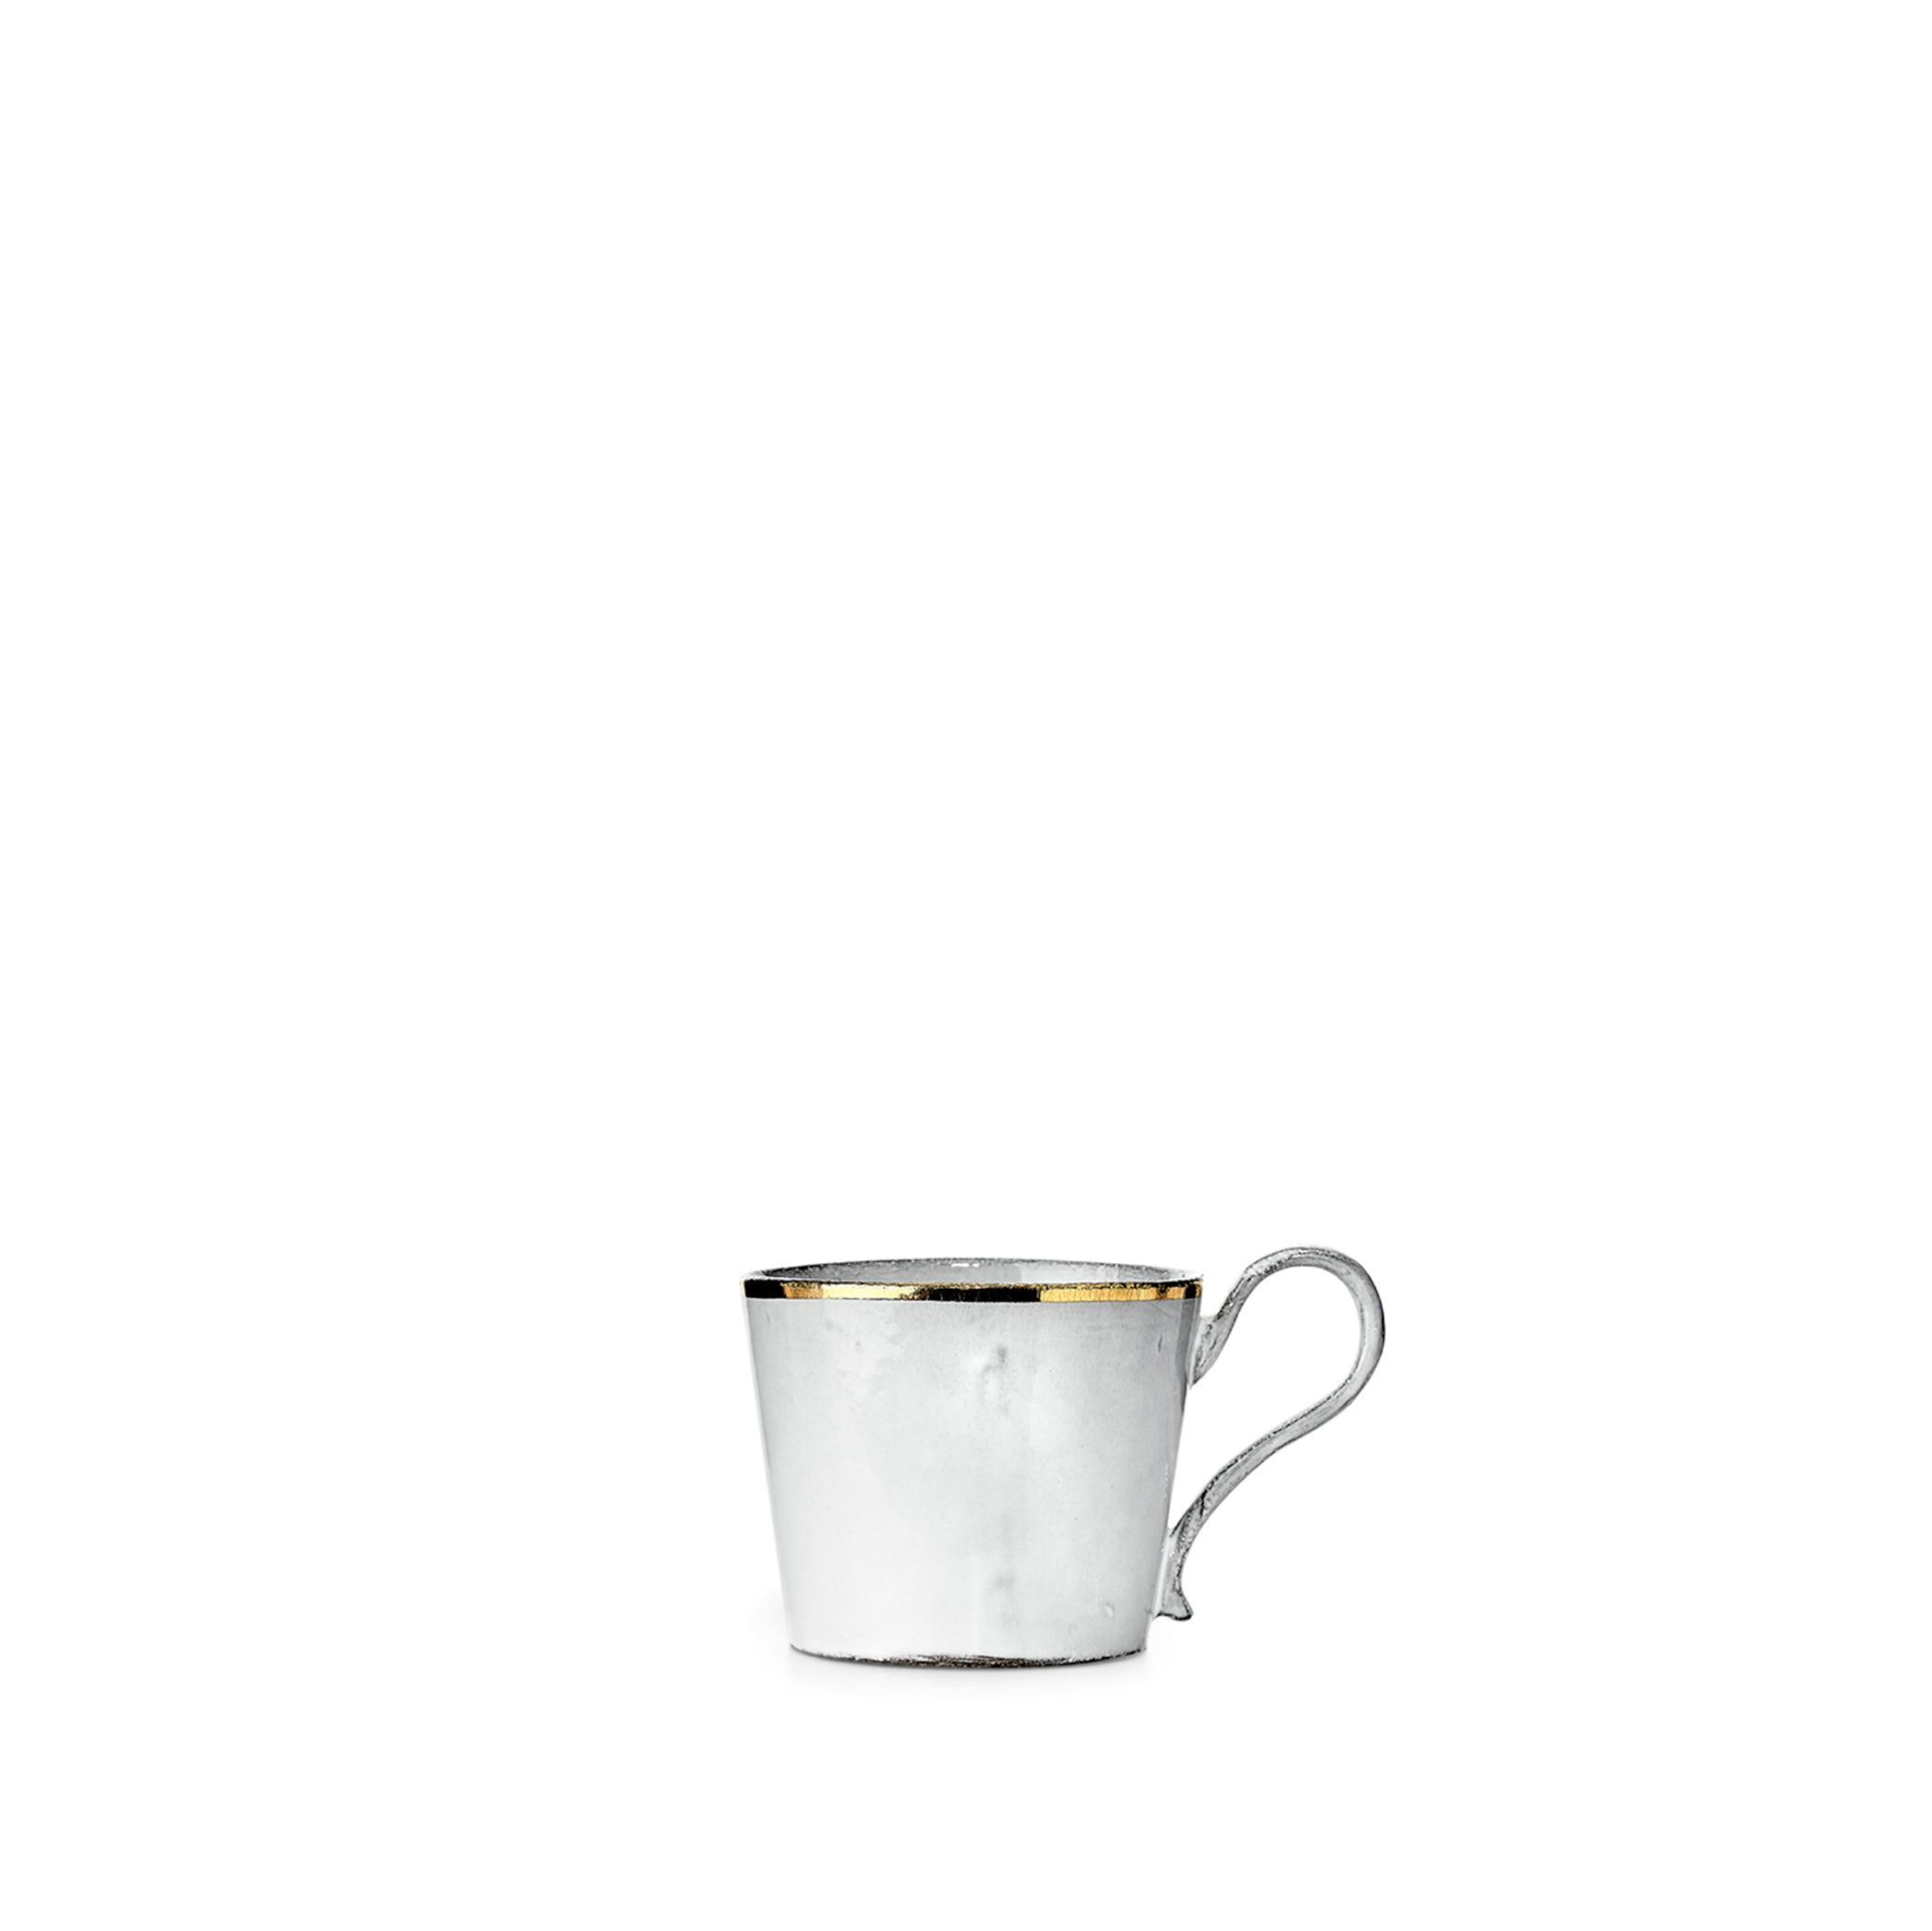 Crésus Large Tea Cup by Astier de Villatte, 8.5cm